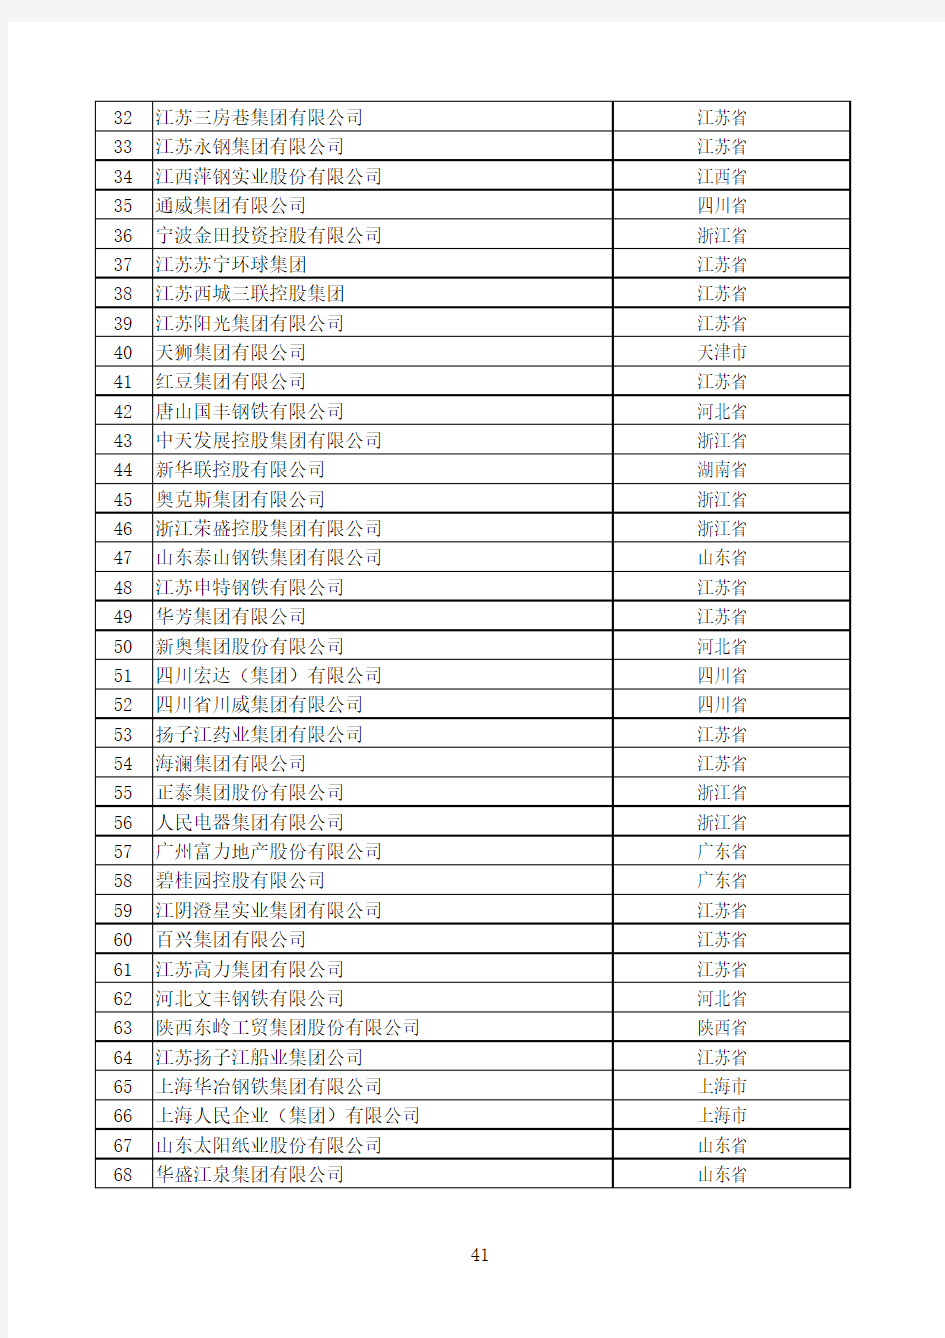 2011年中国民营企业100强名单